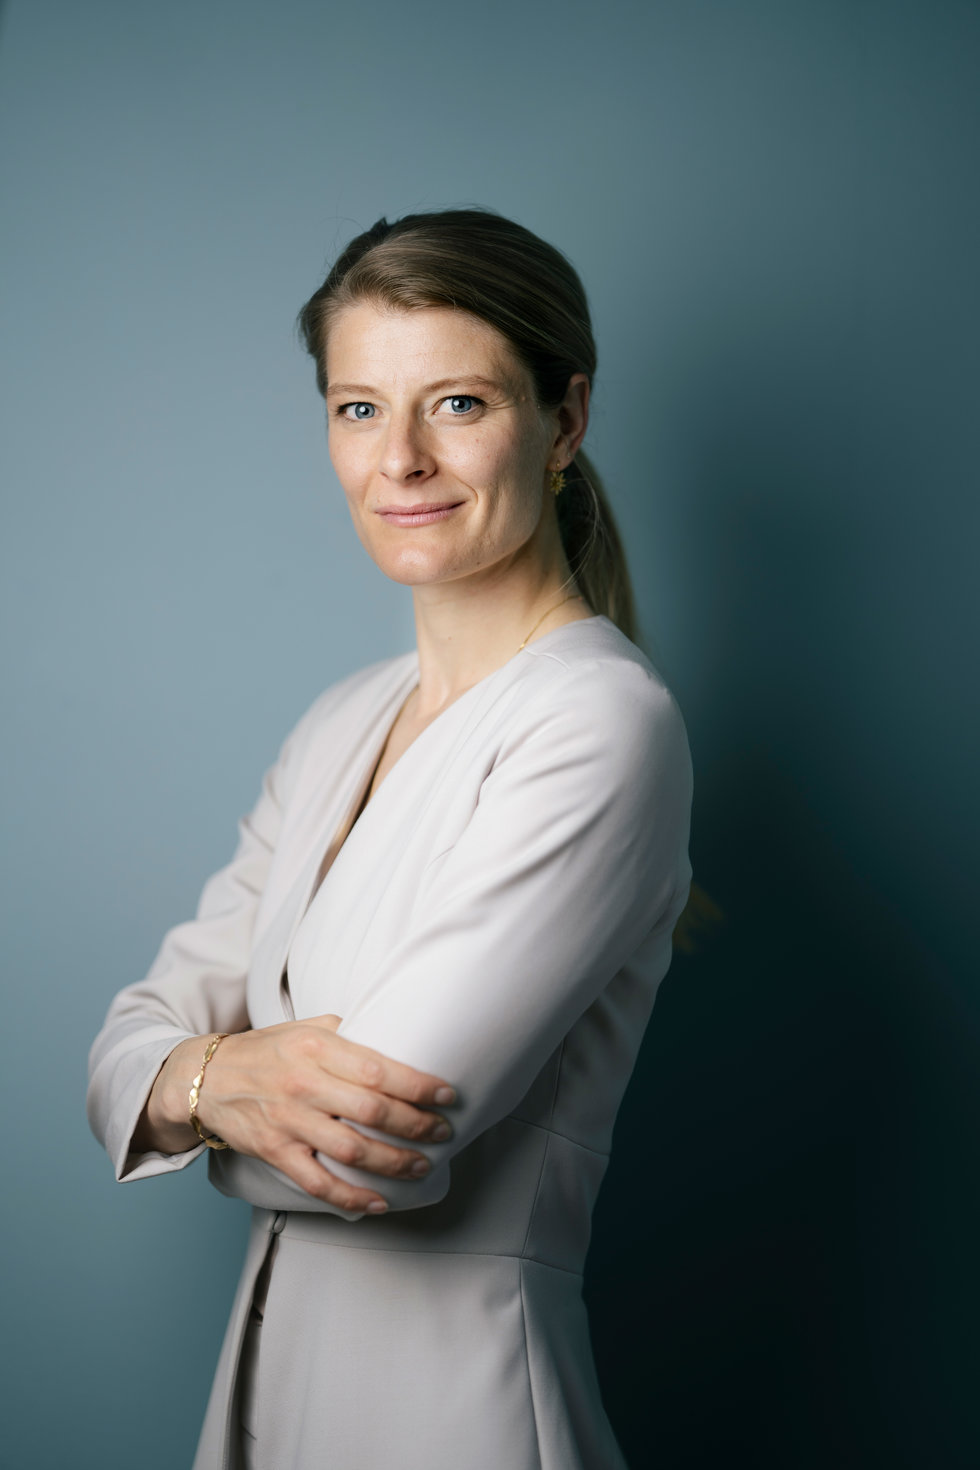 Ane Halsboe-Jørgensen